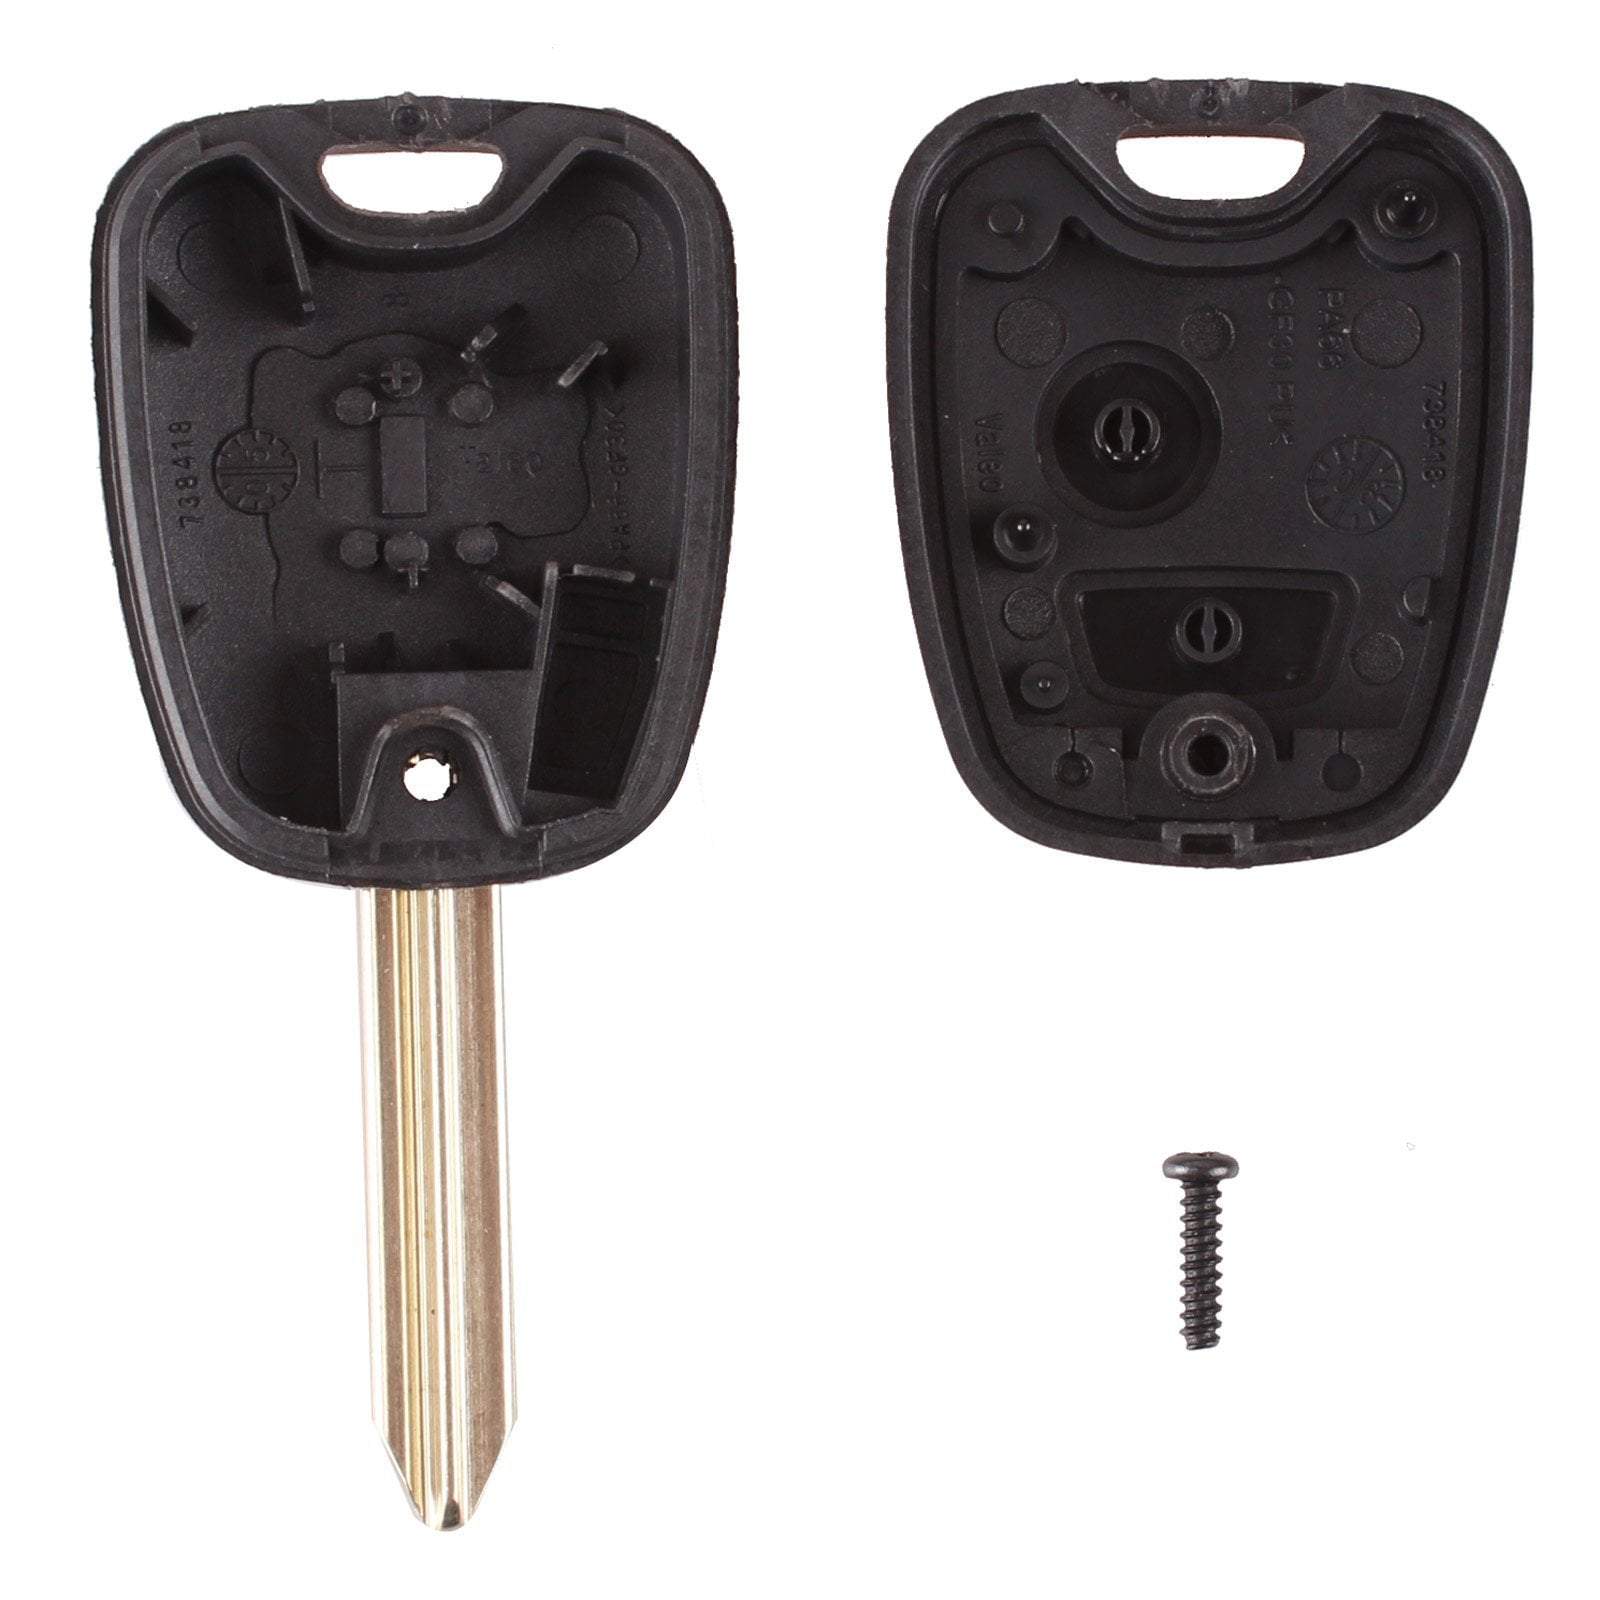 Fekete színű, 2 gombos Citroen kulcs, kulcsház belseje. SX9 kulcsszárral.